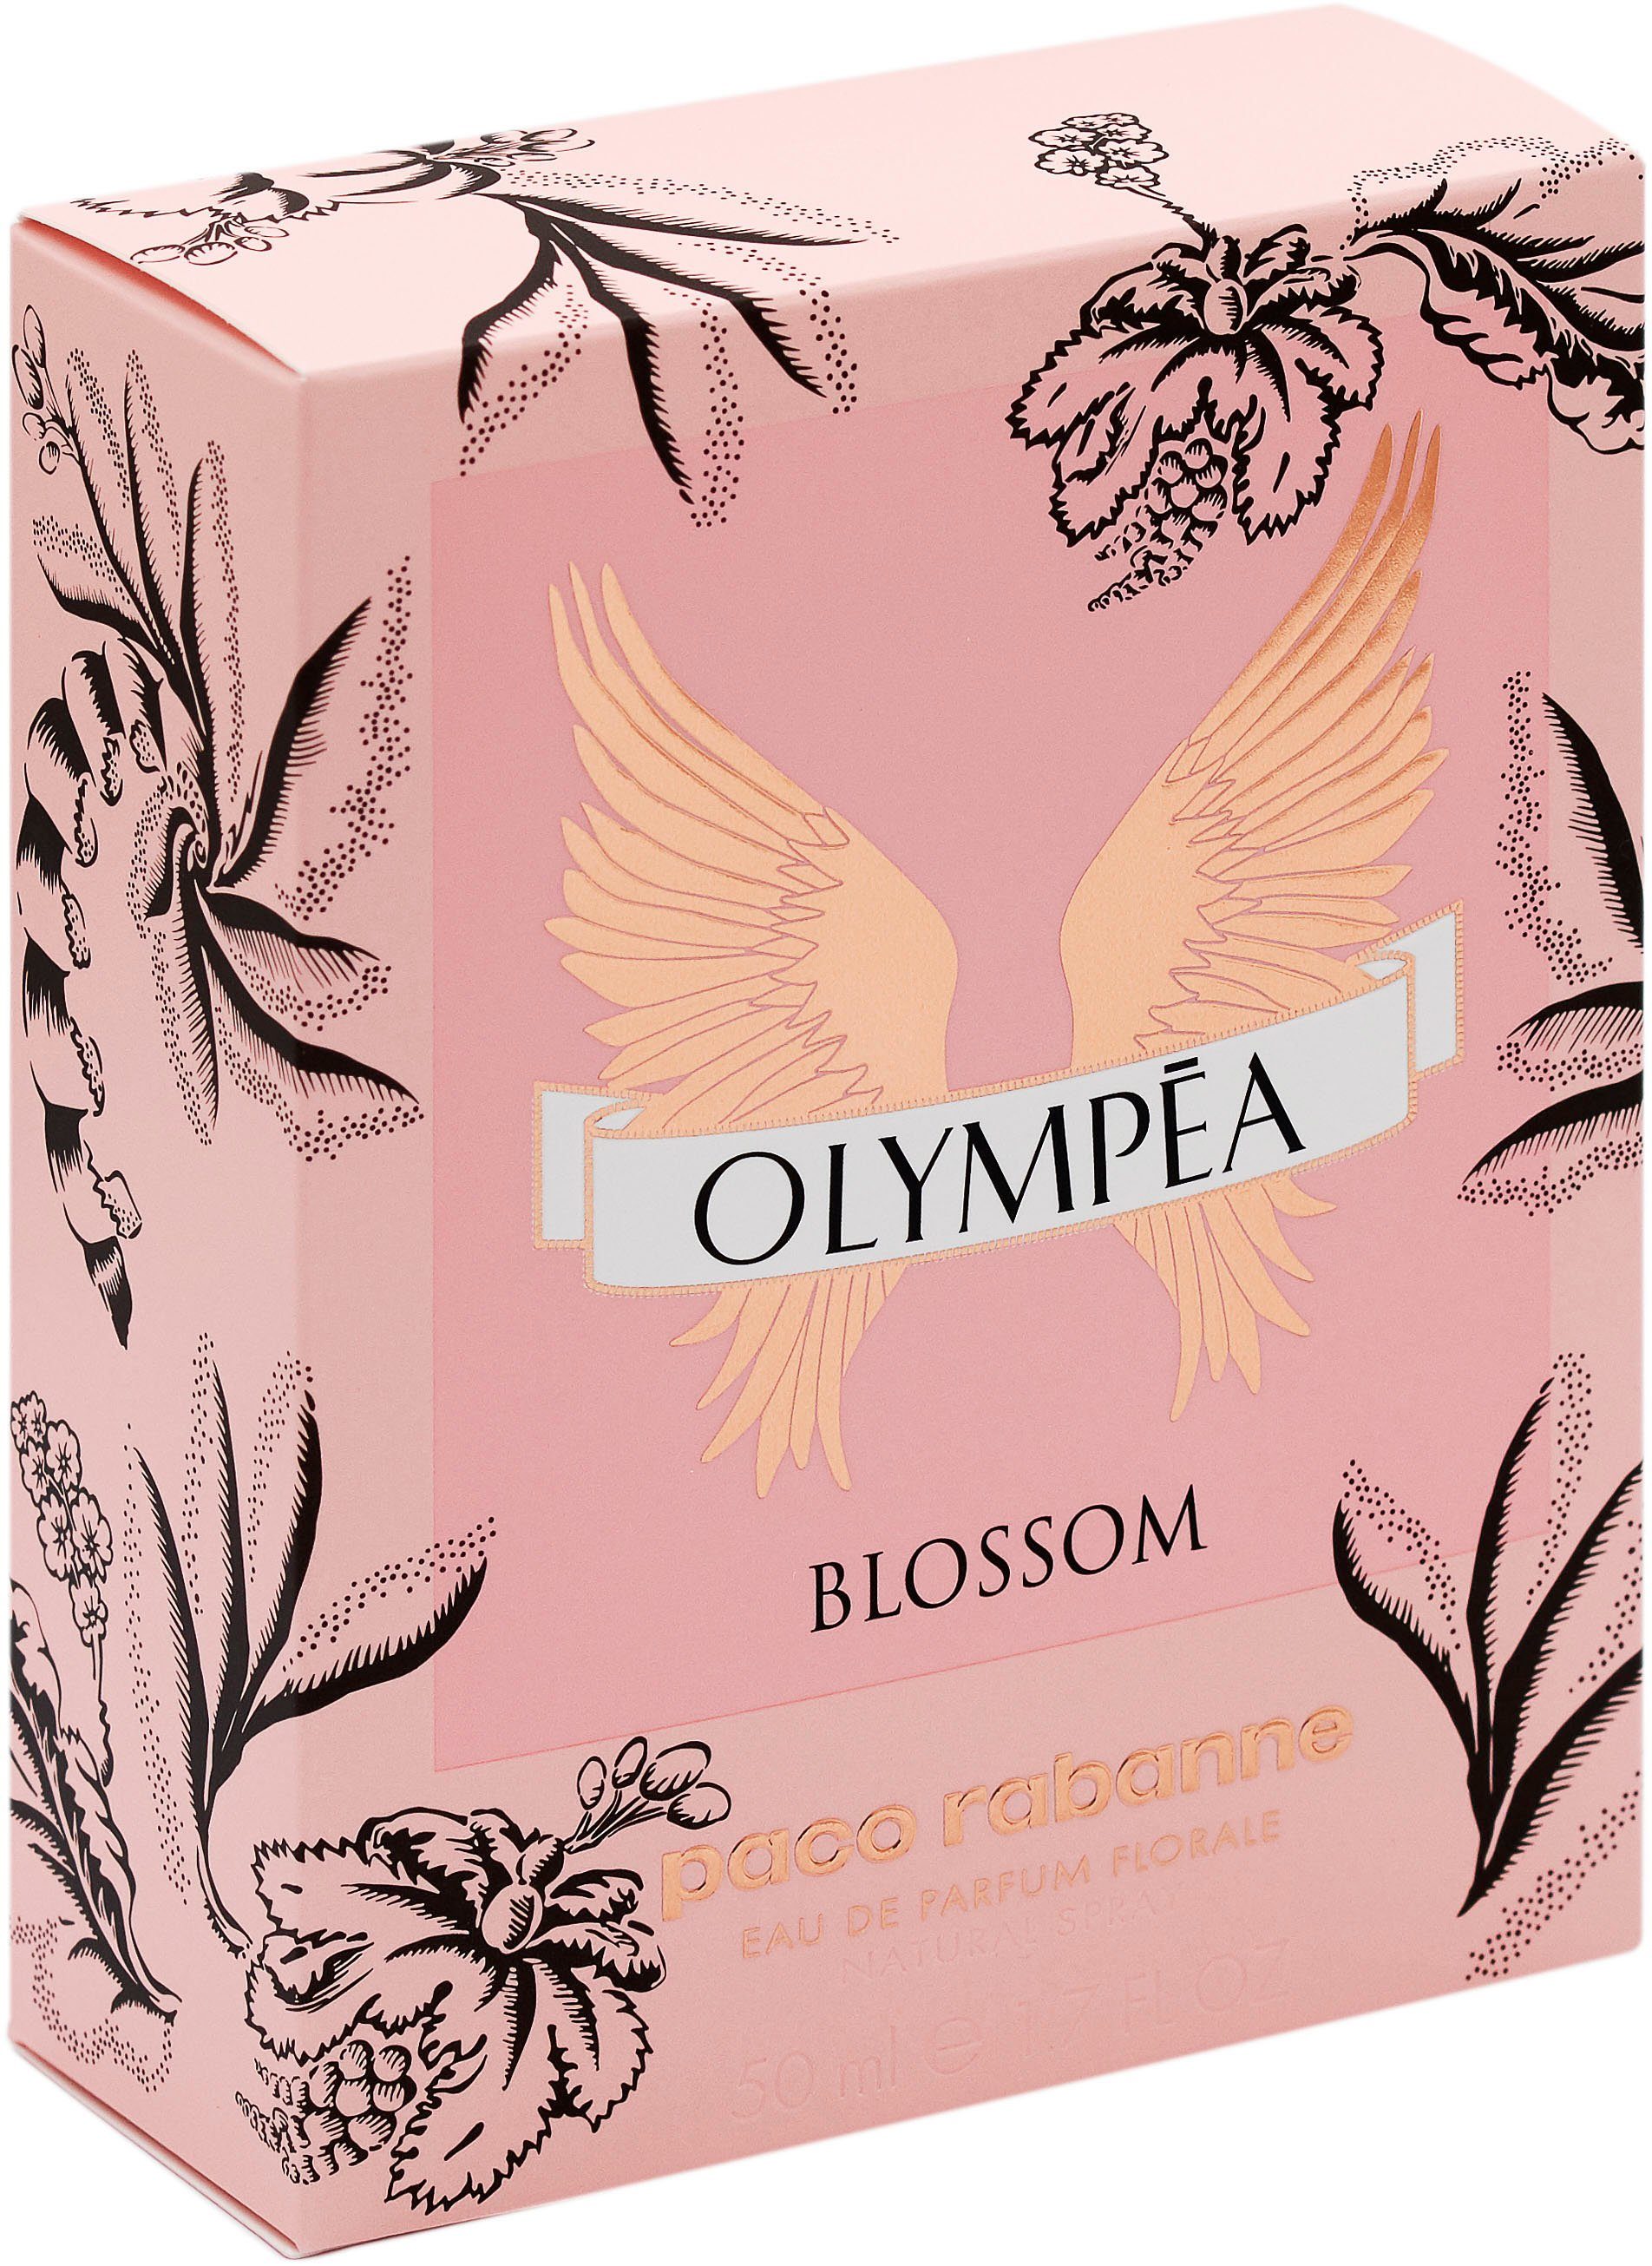 paco rabanne Eau de Olympéa Blossom Parfum